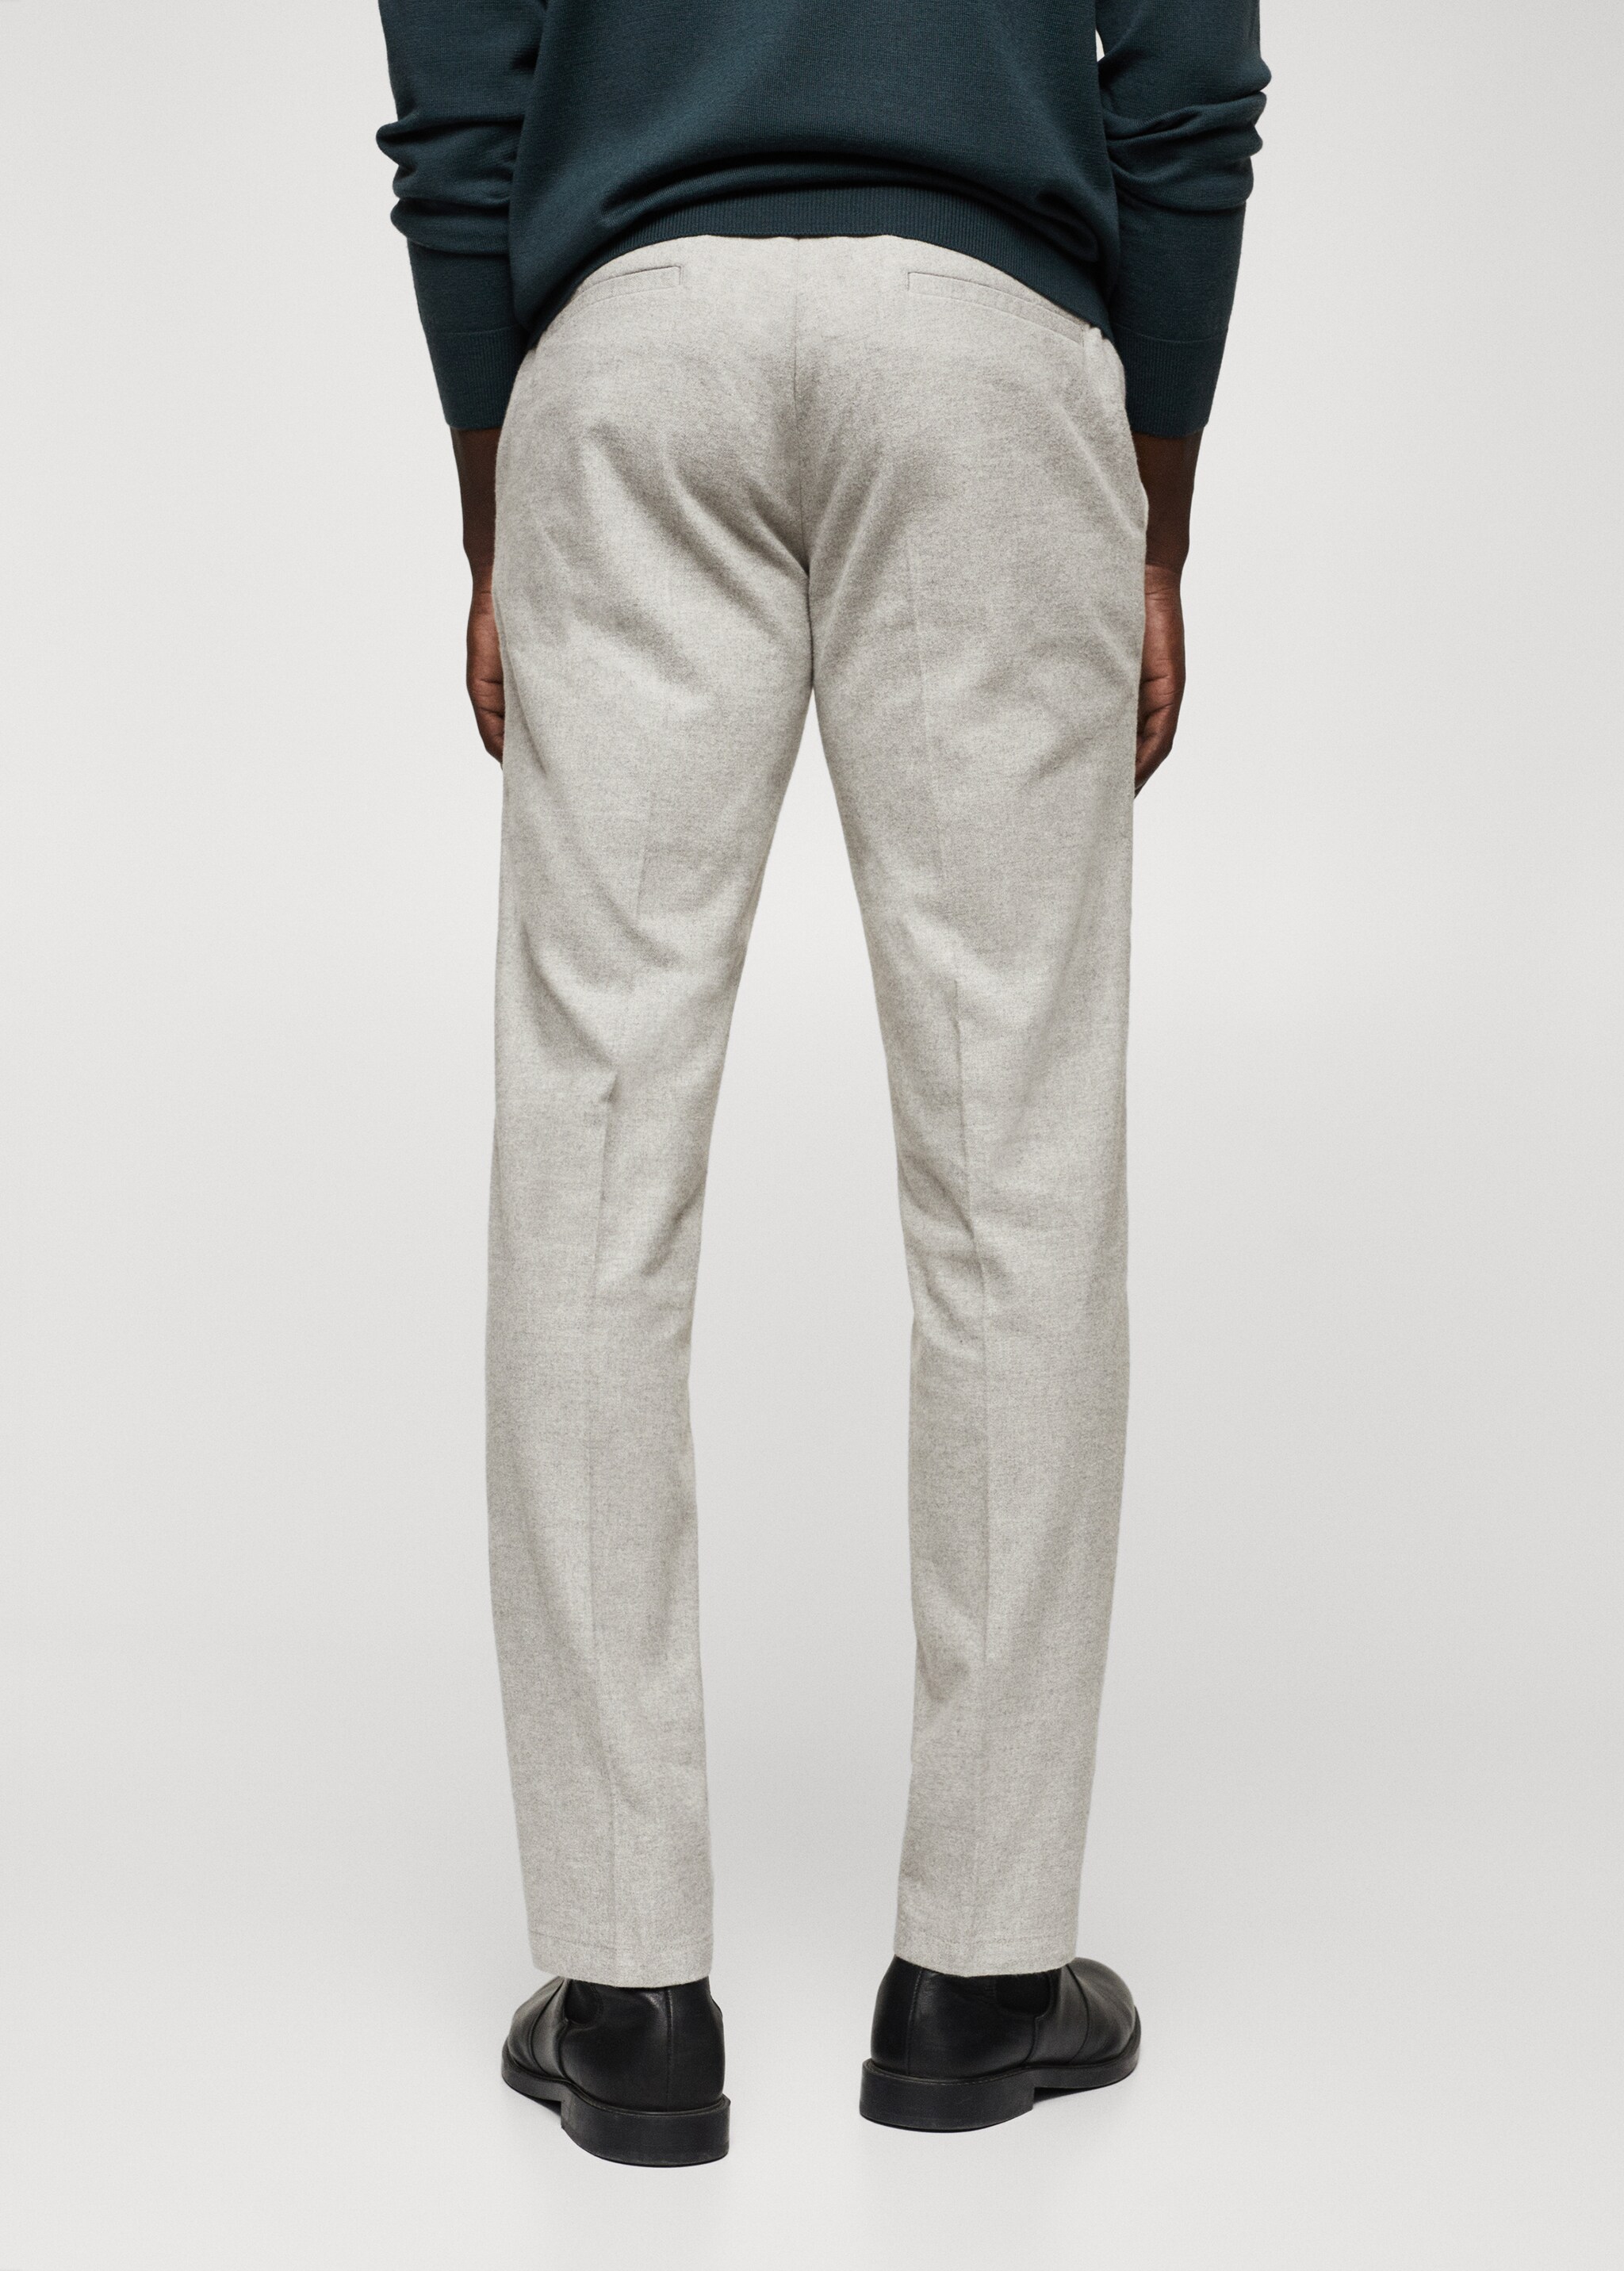 Pantalón slim fit algodón - Reverso del artículo